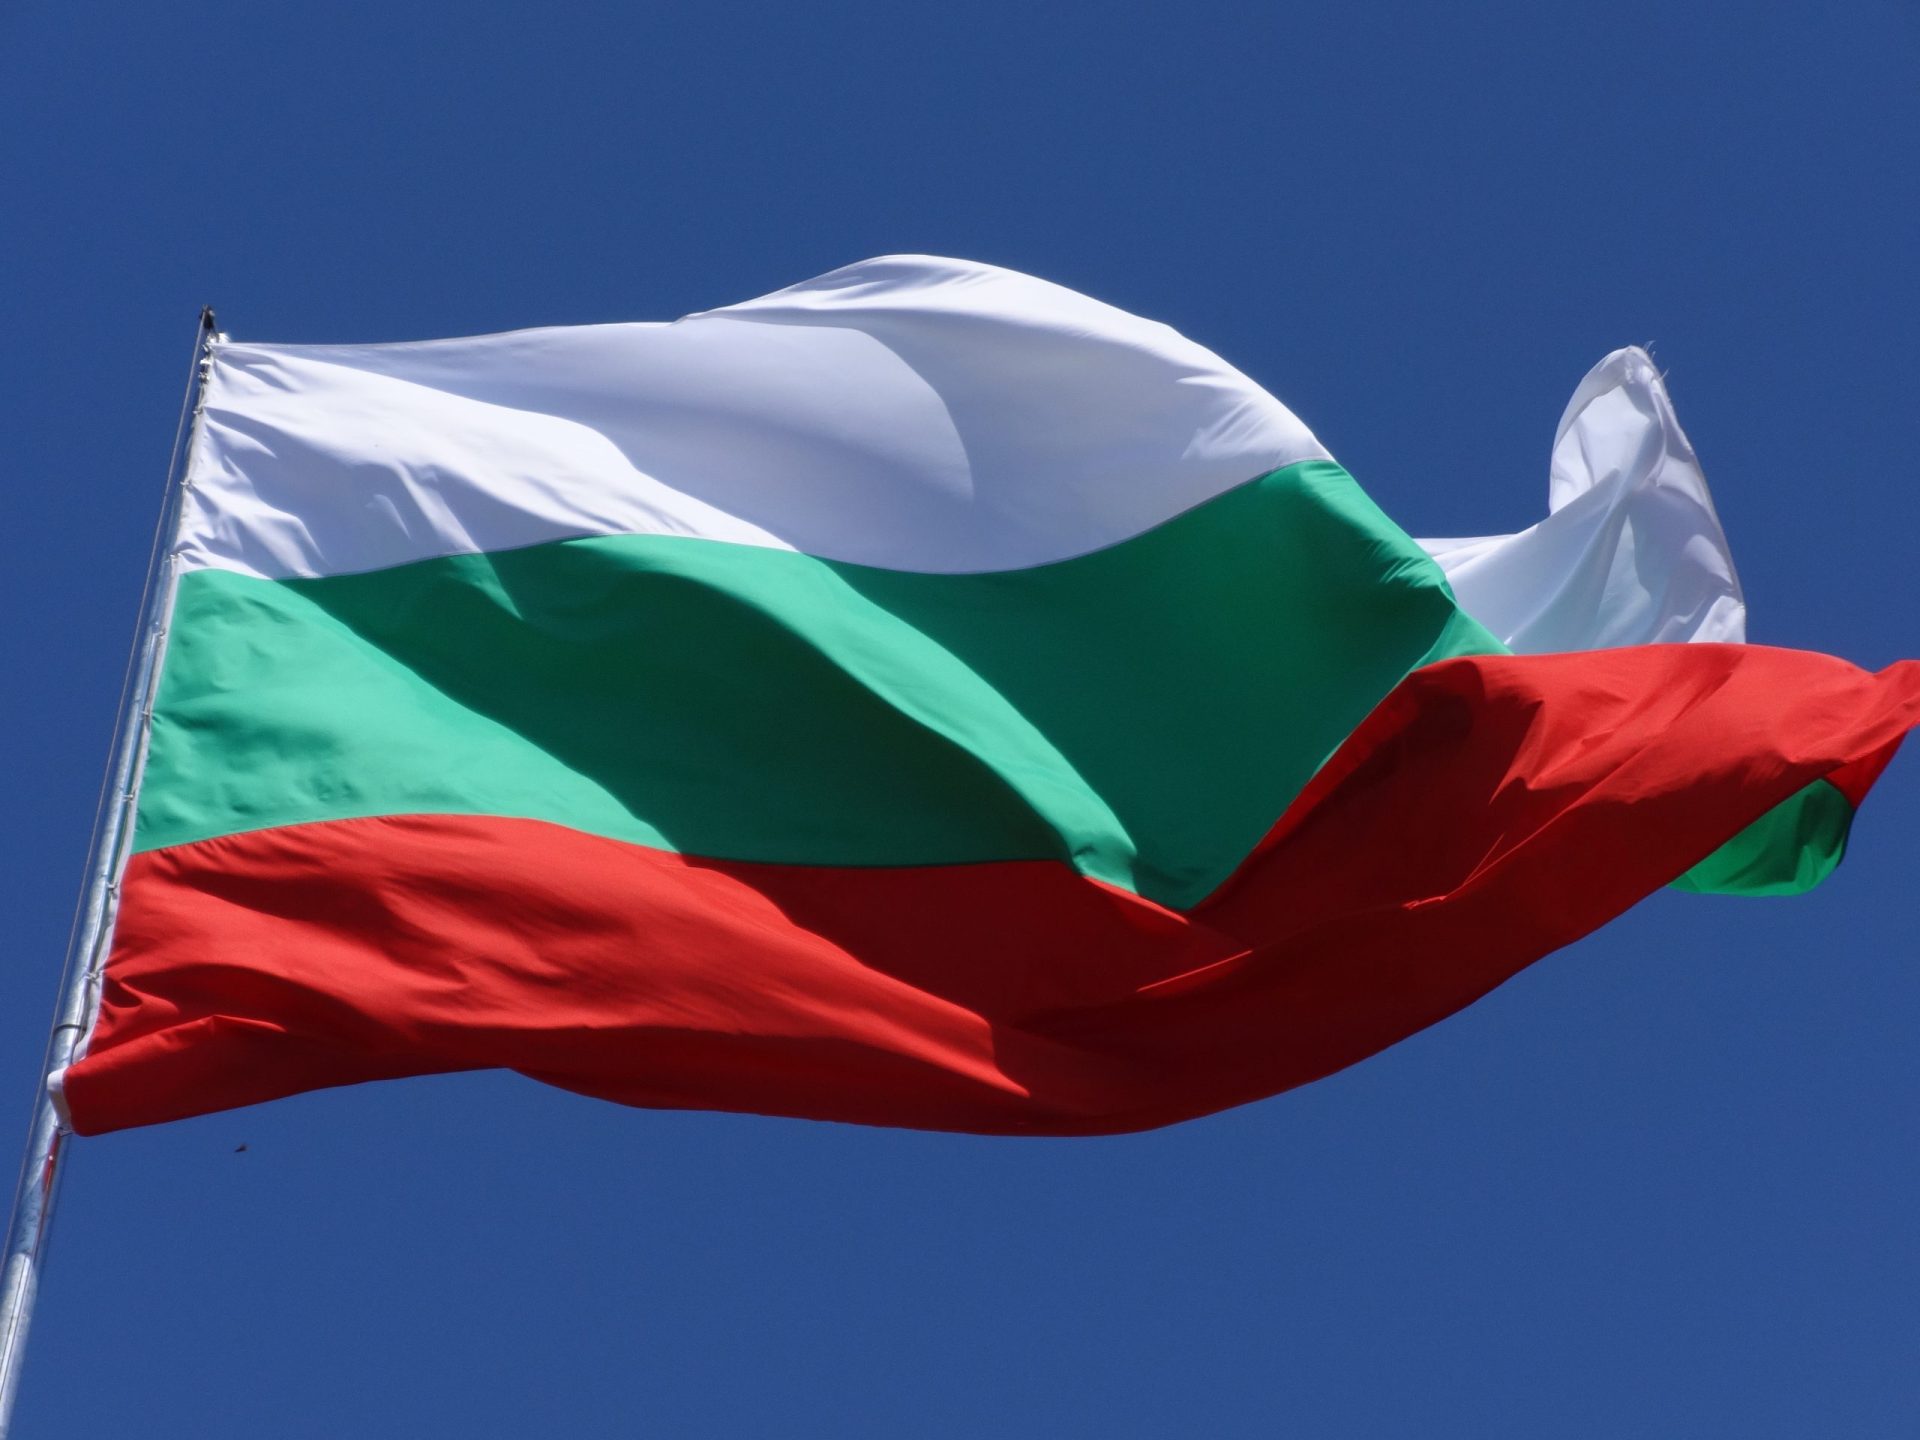 130 migrantes encontrados em contentor frigorífico na Bulgária